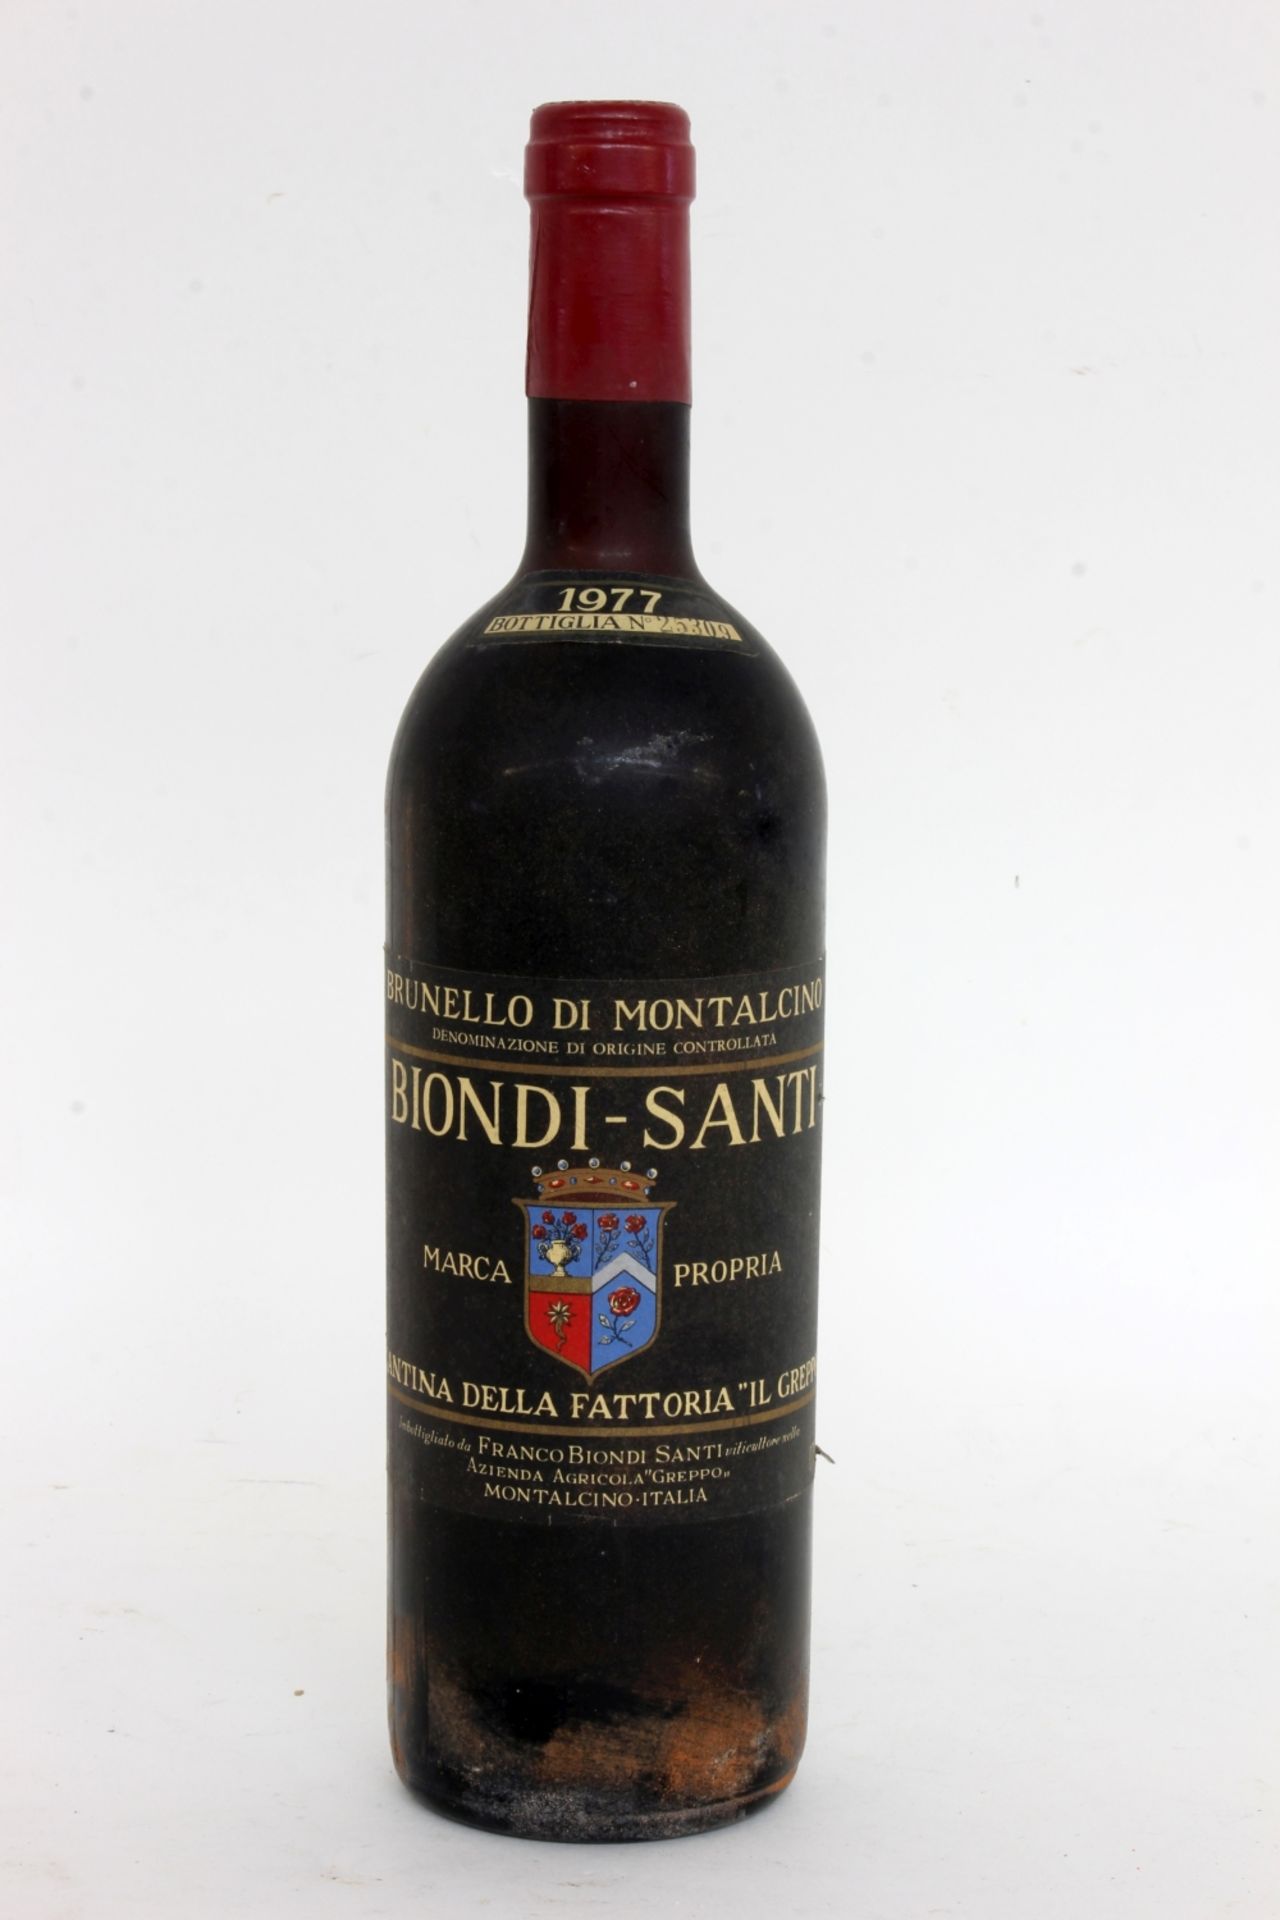 BIONDI-SANTI 1977 Brunello di - Image 2 of 2